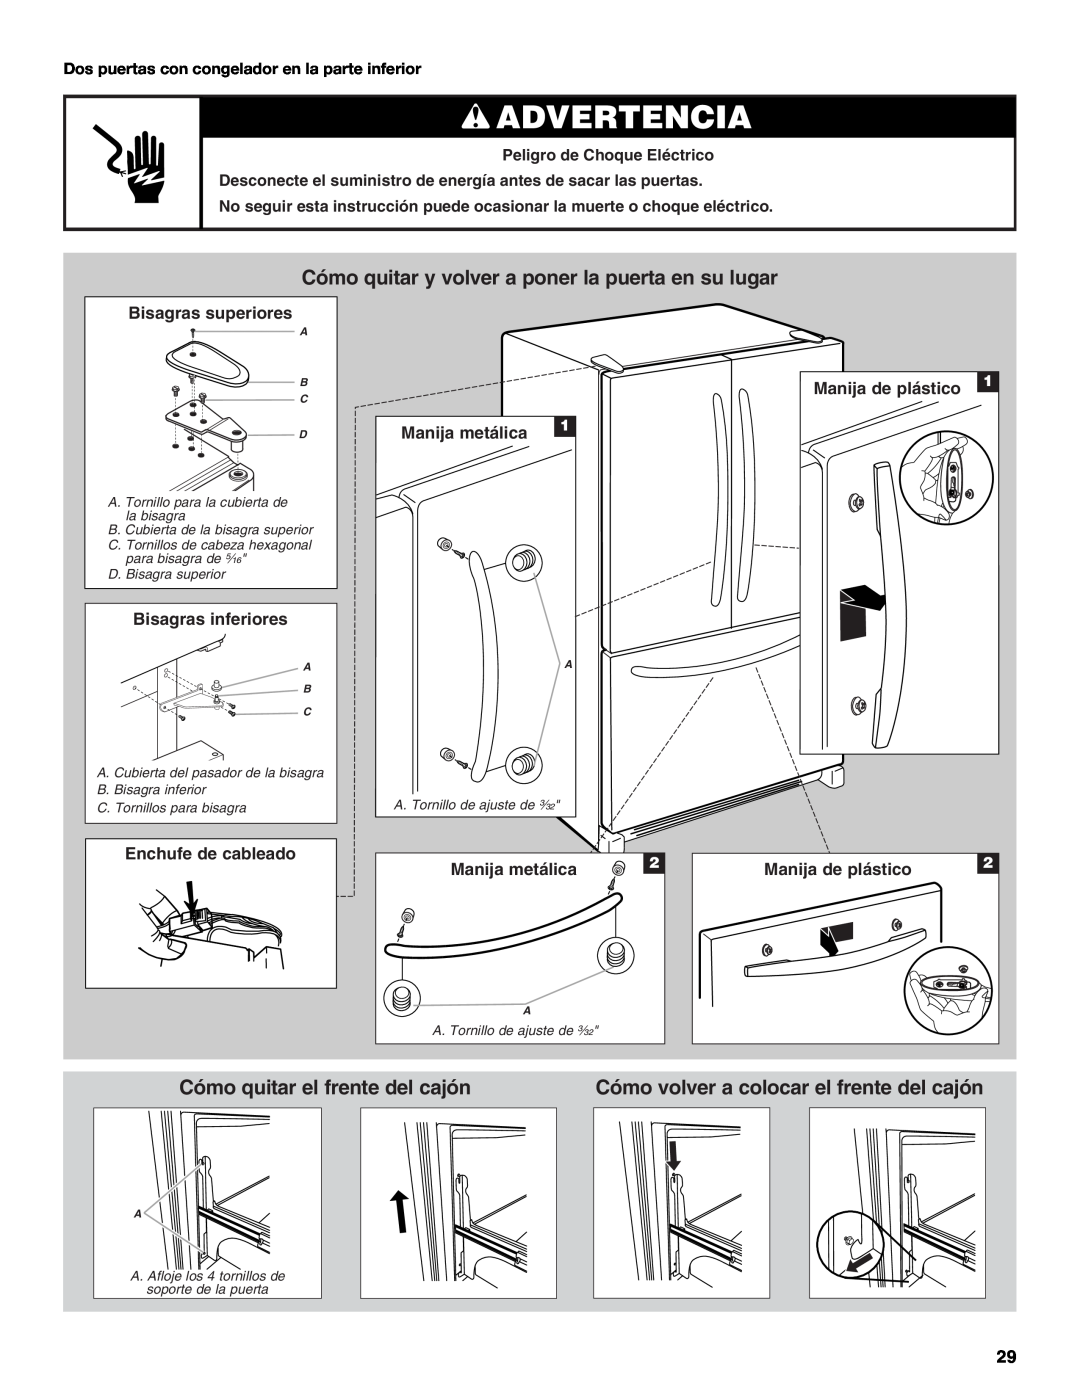 Whirlpool W10208431A Advertencia, Cómo quitar y volver a poner la puerta en su lugar, Cómo quitar el frente del cajón 